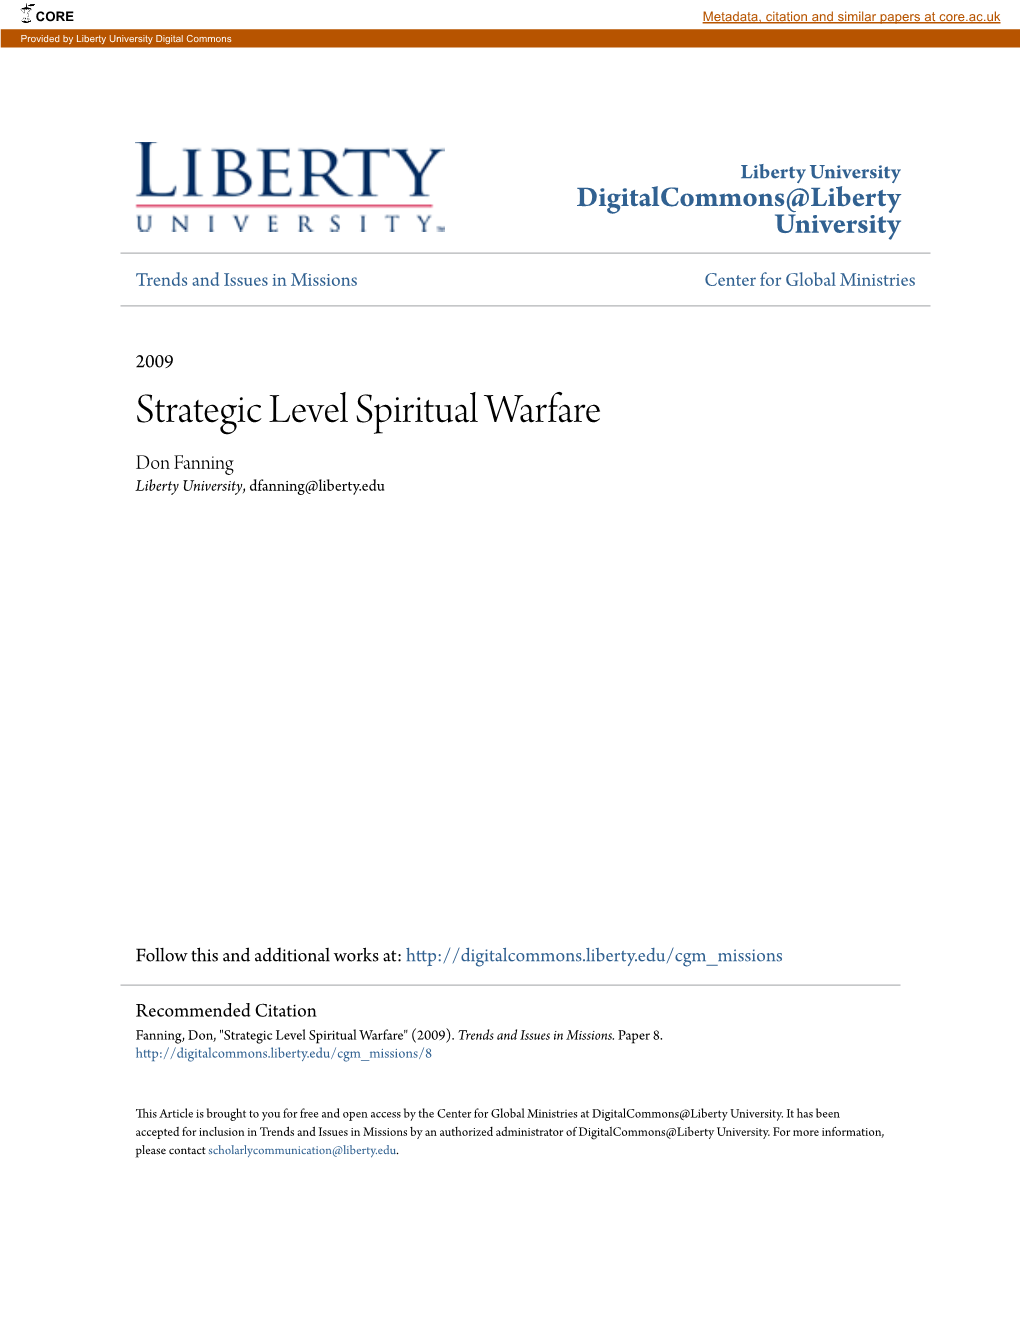 Strategic Level Spiritual Warfare Don Fanning Liberty University, Dfanning@Liberty.Edu